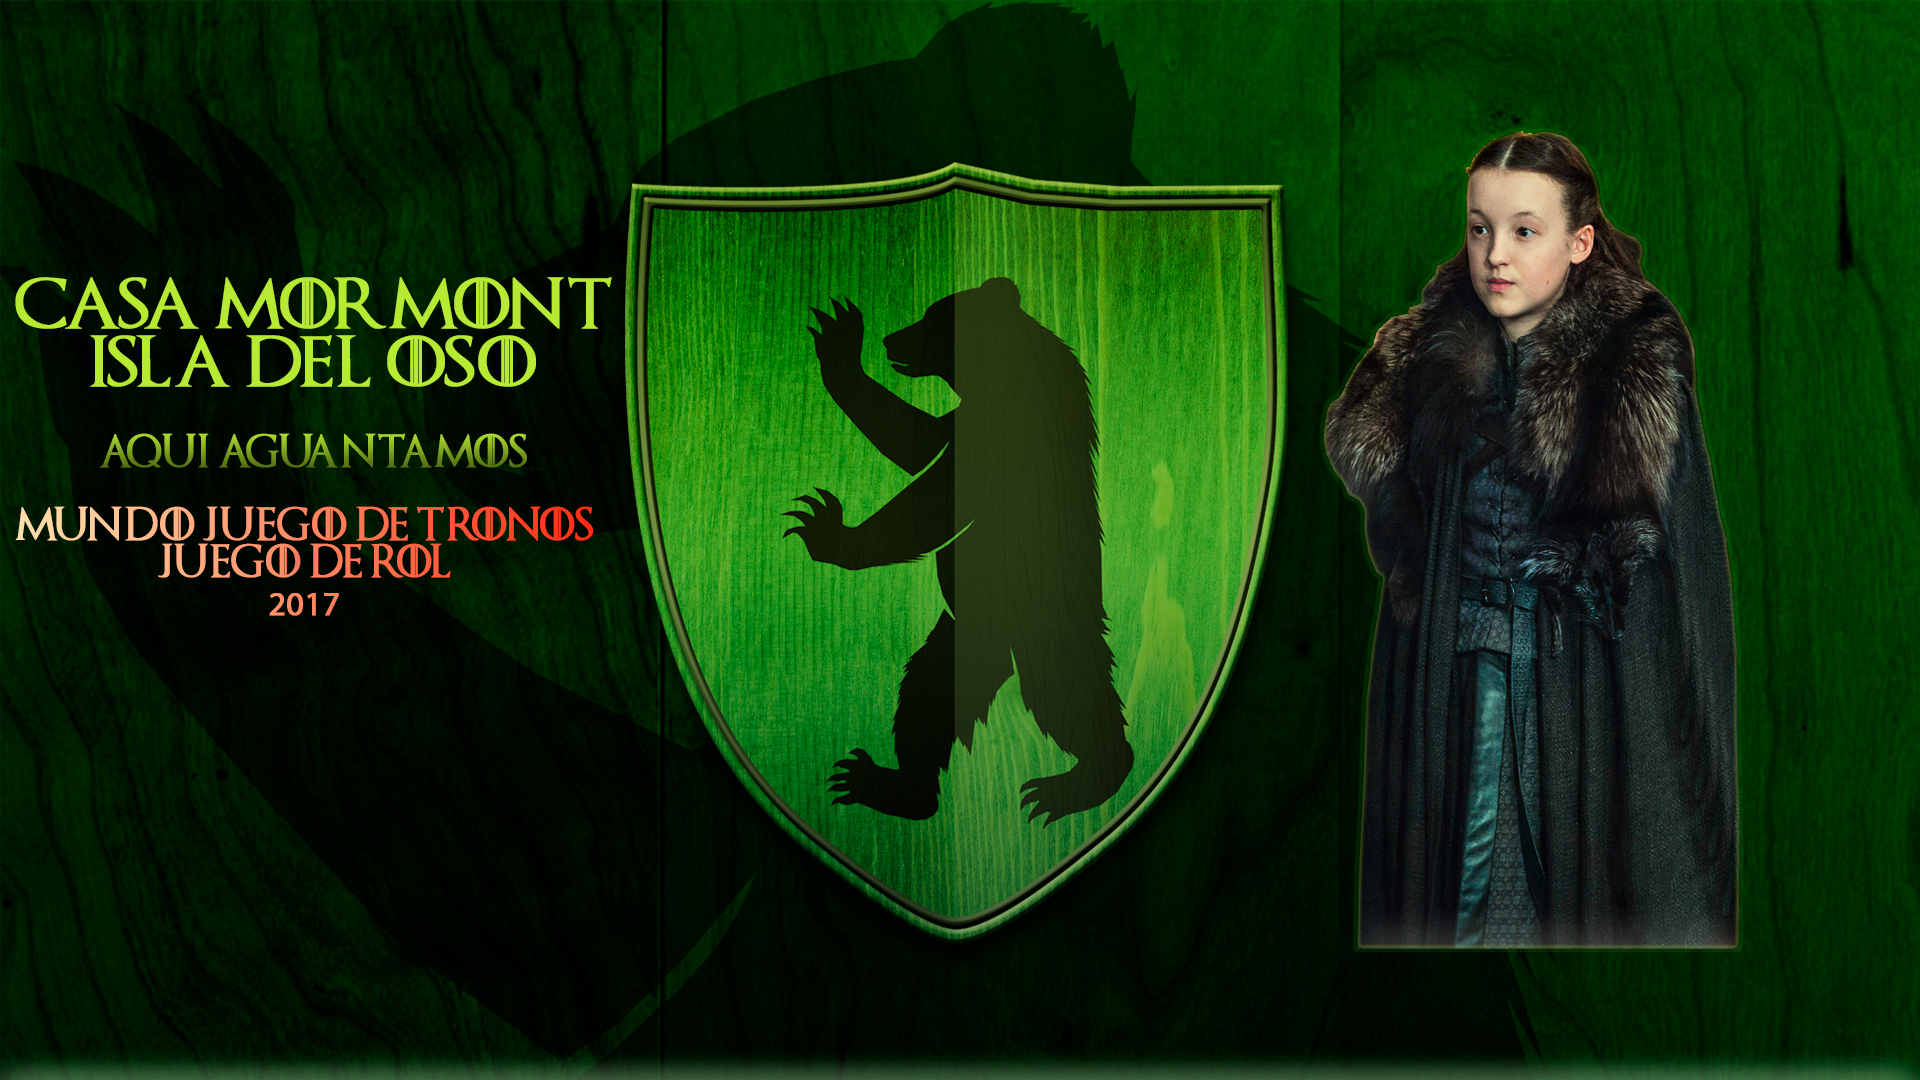 Casa Mormont MJT | Mundo Juego de Tronos Wiki | Fandom